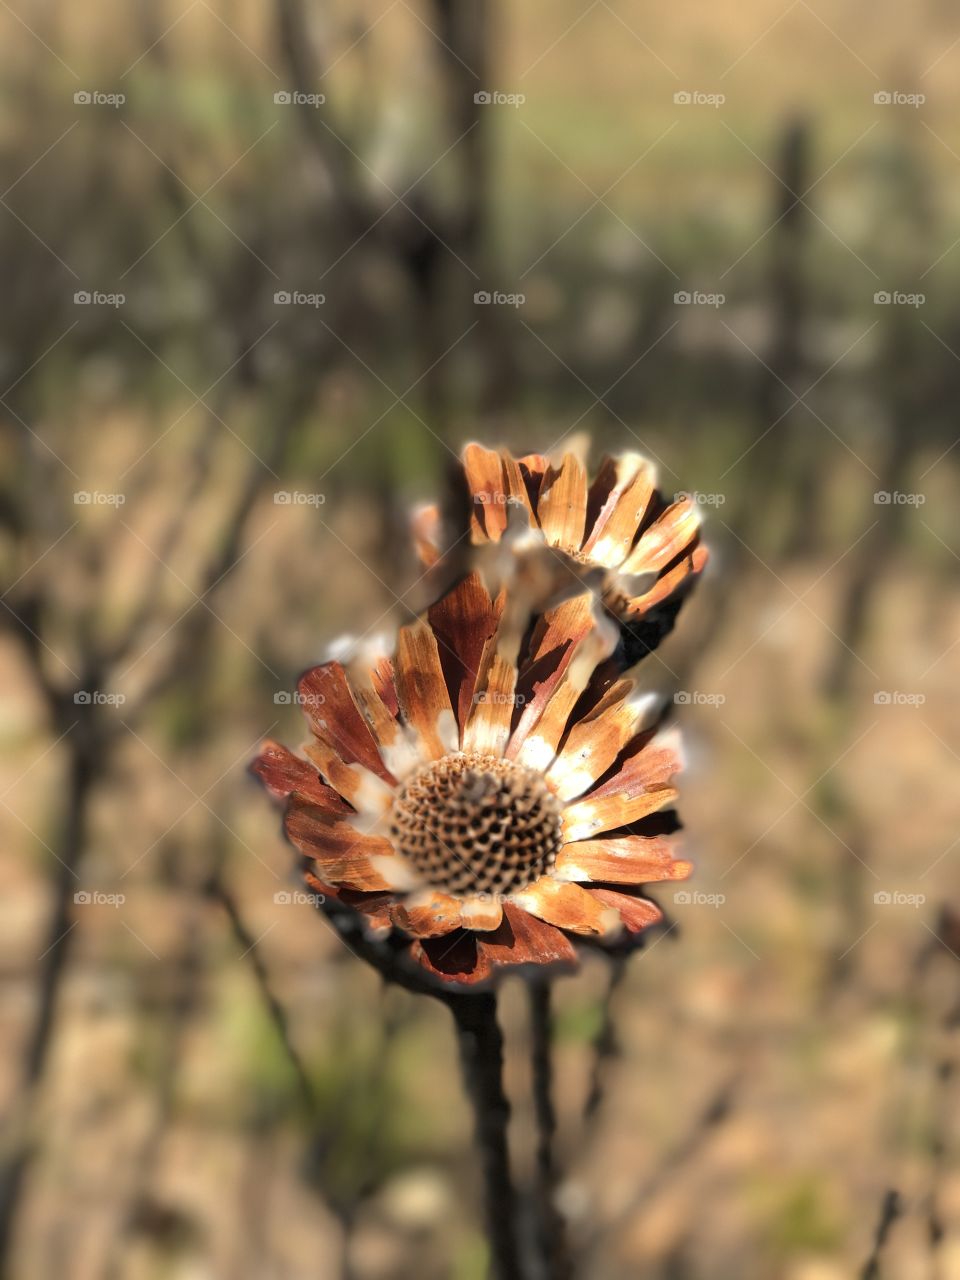 Burnt mountain flower